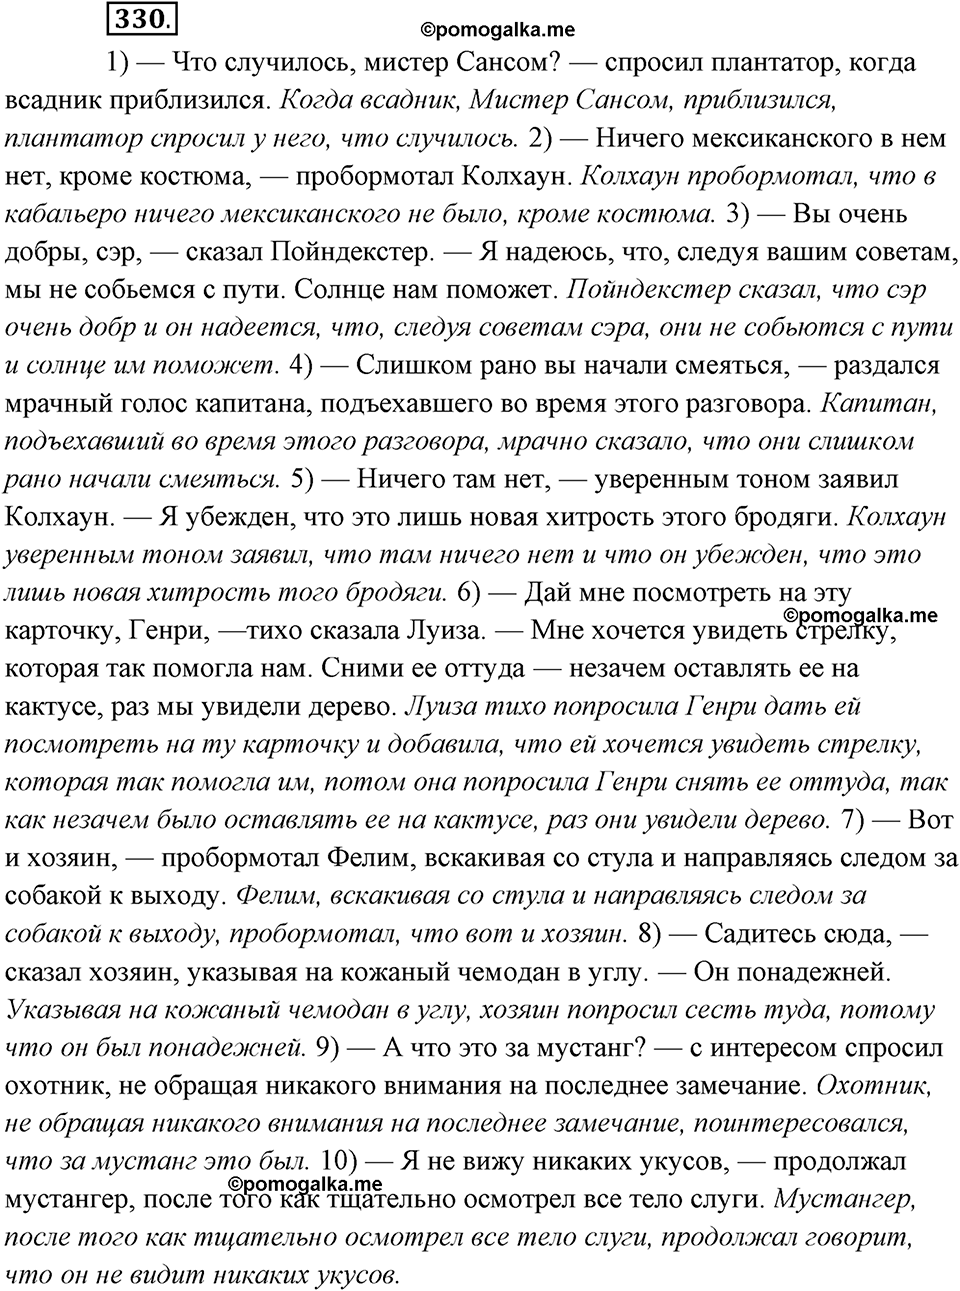 страница 212 упражнение 330 русский язык 8 класс Рыбченкова 2018 год